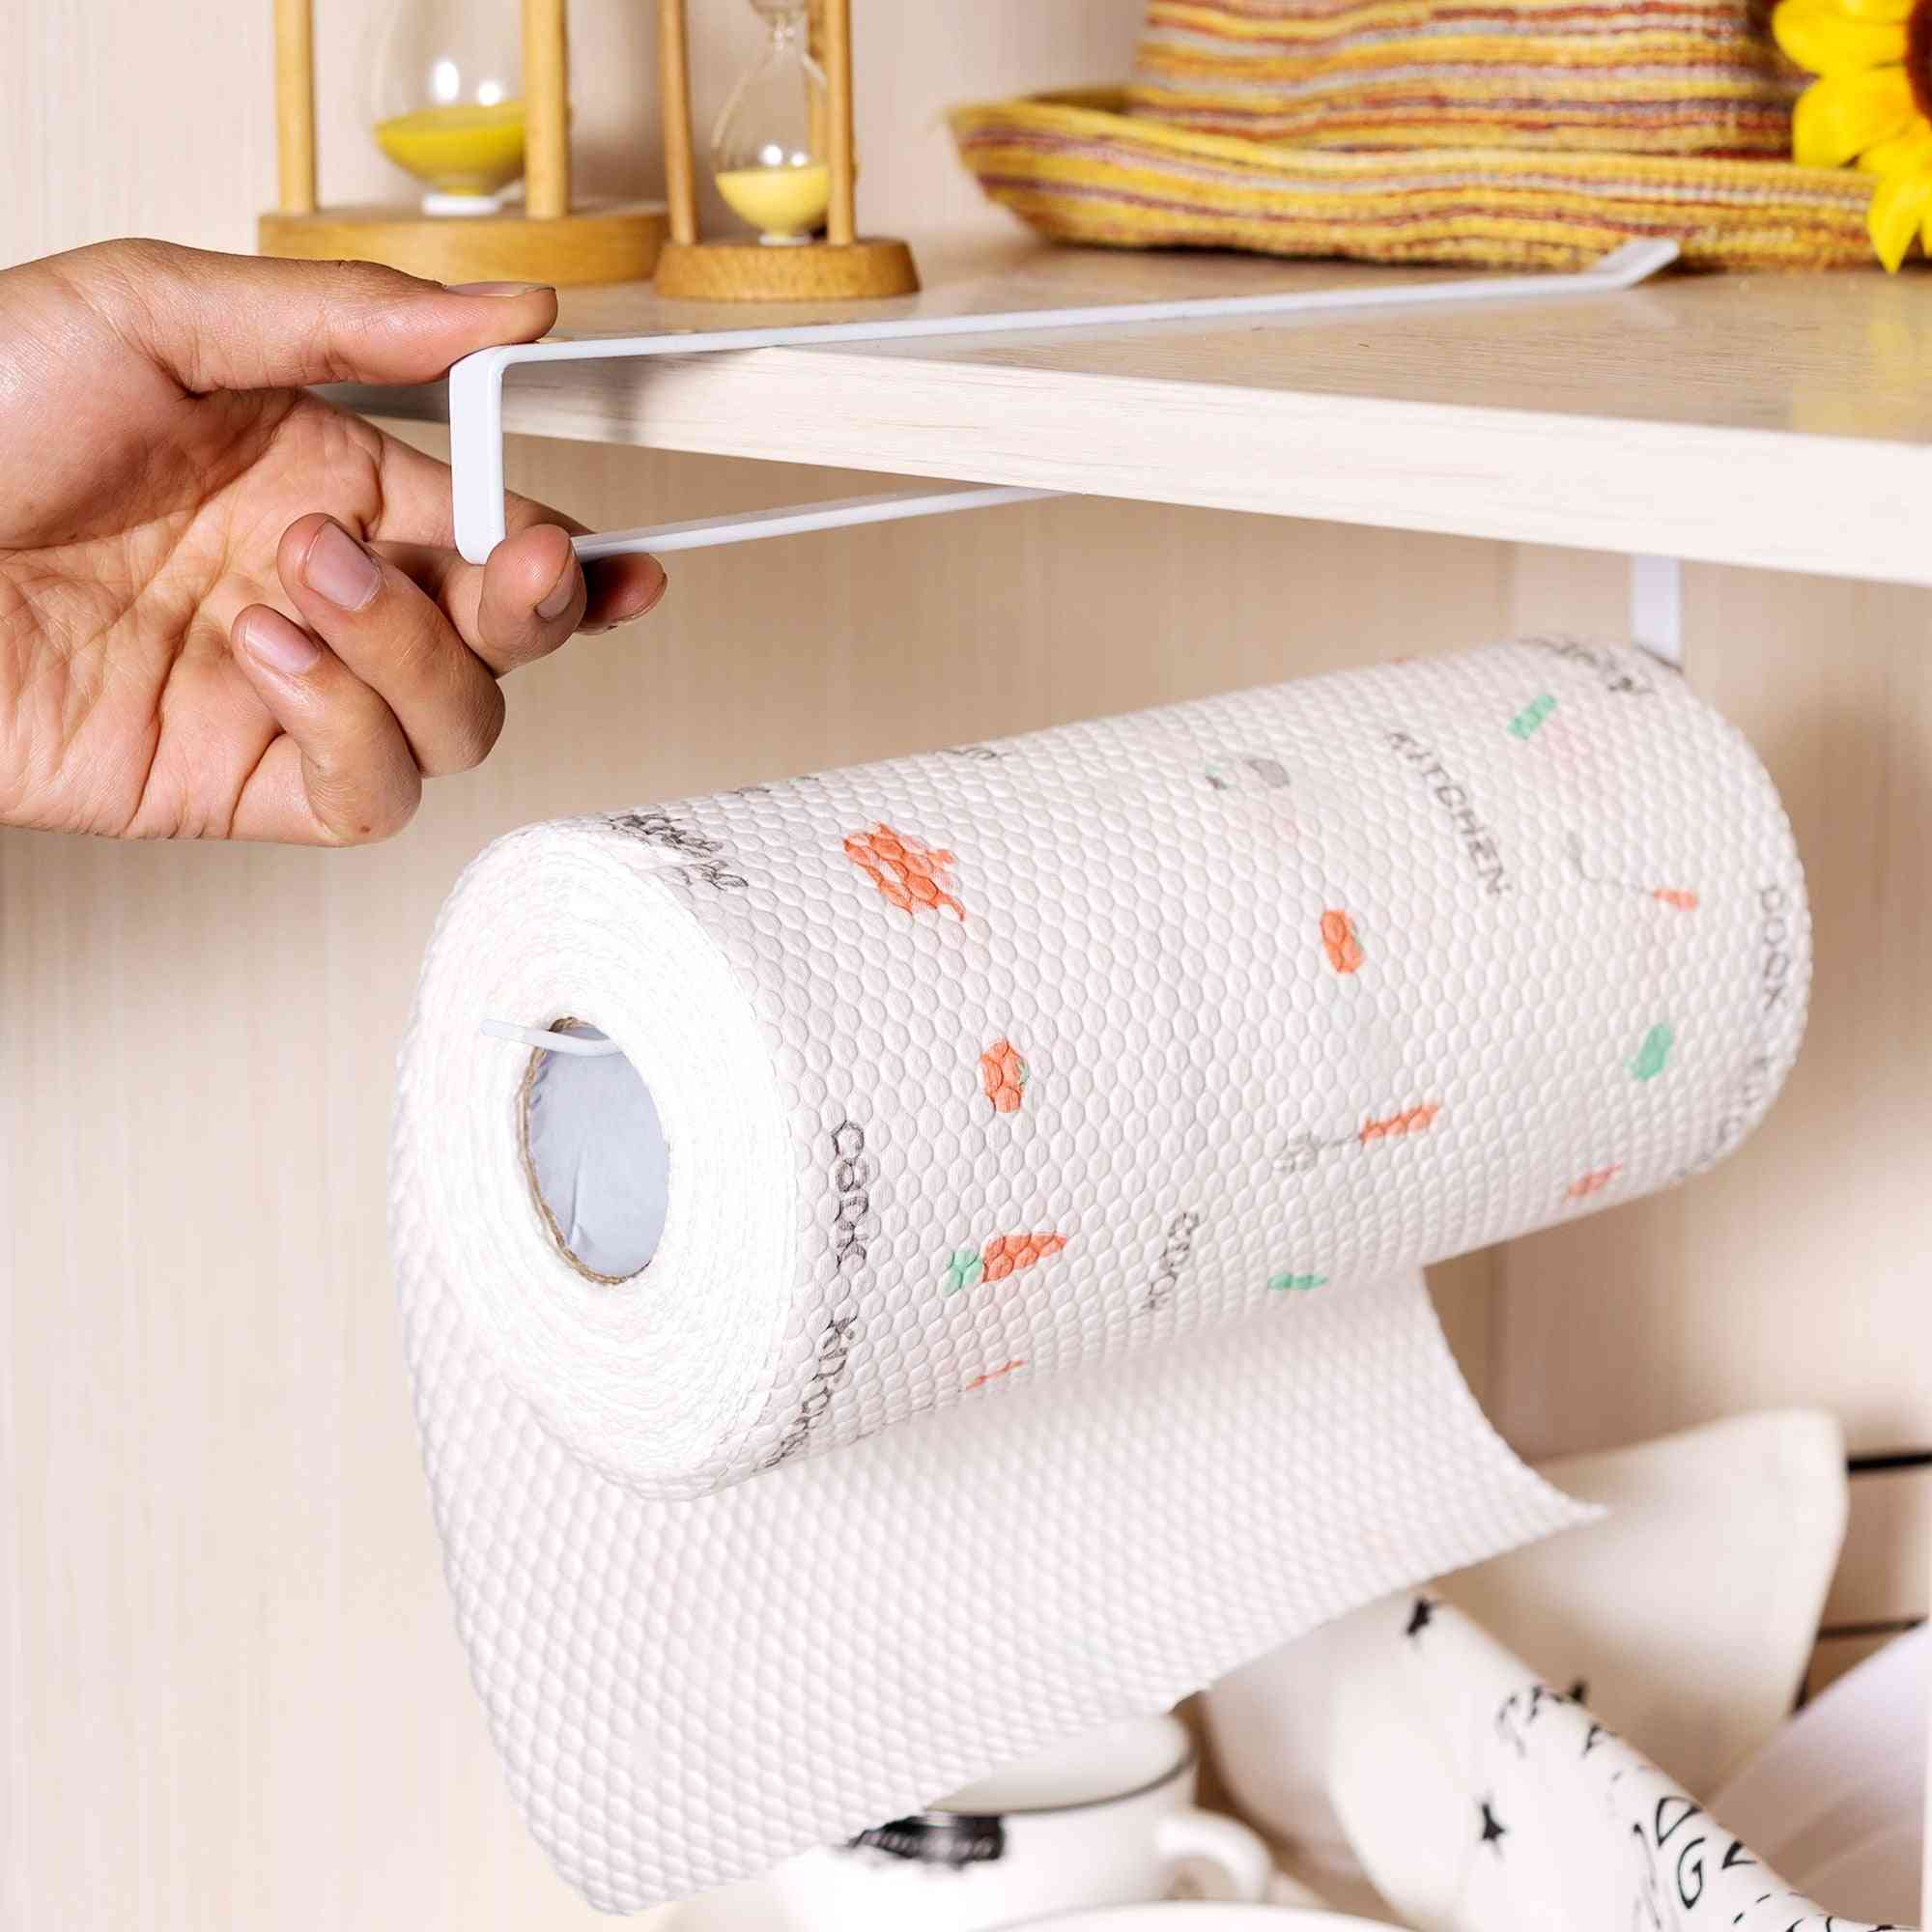 Portaoggetti creativo in ferro battuto, portarotolo per asciugamani a punzone libero per bagno, soggiorno cucina (bianco) -